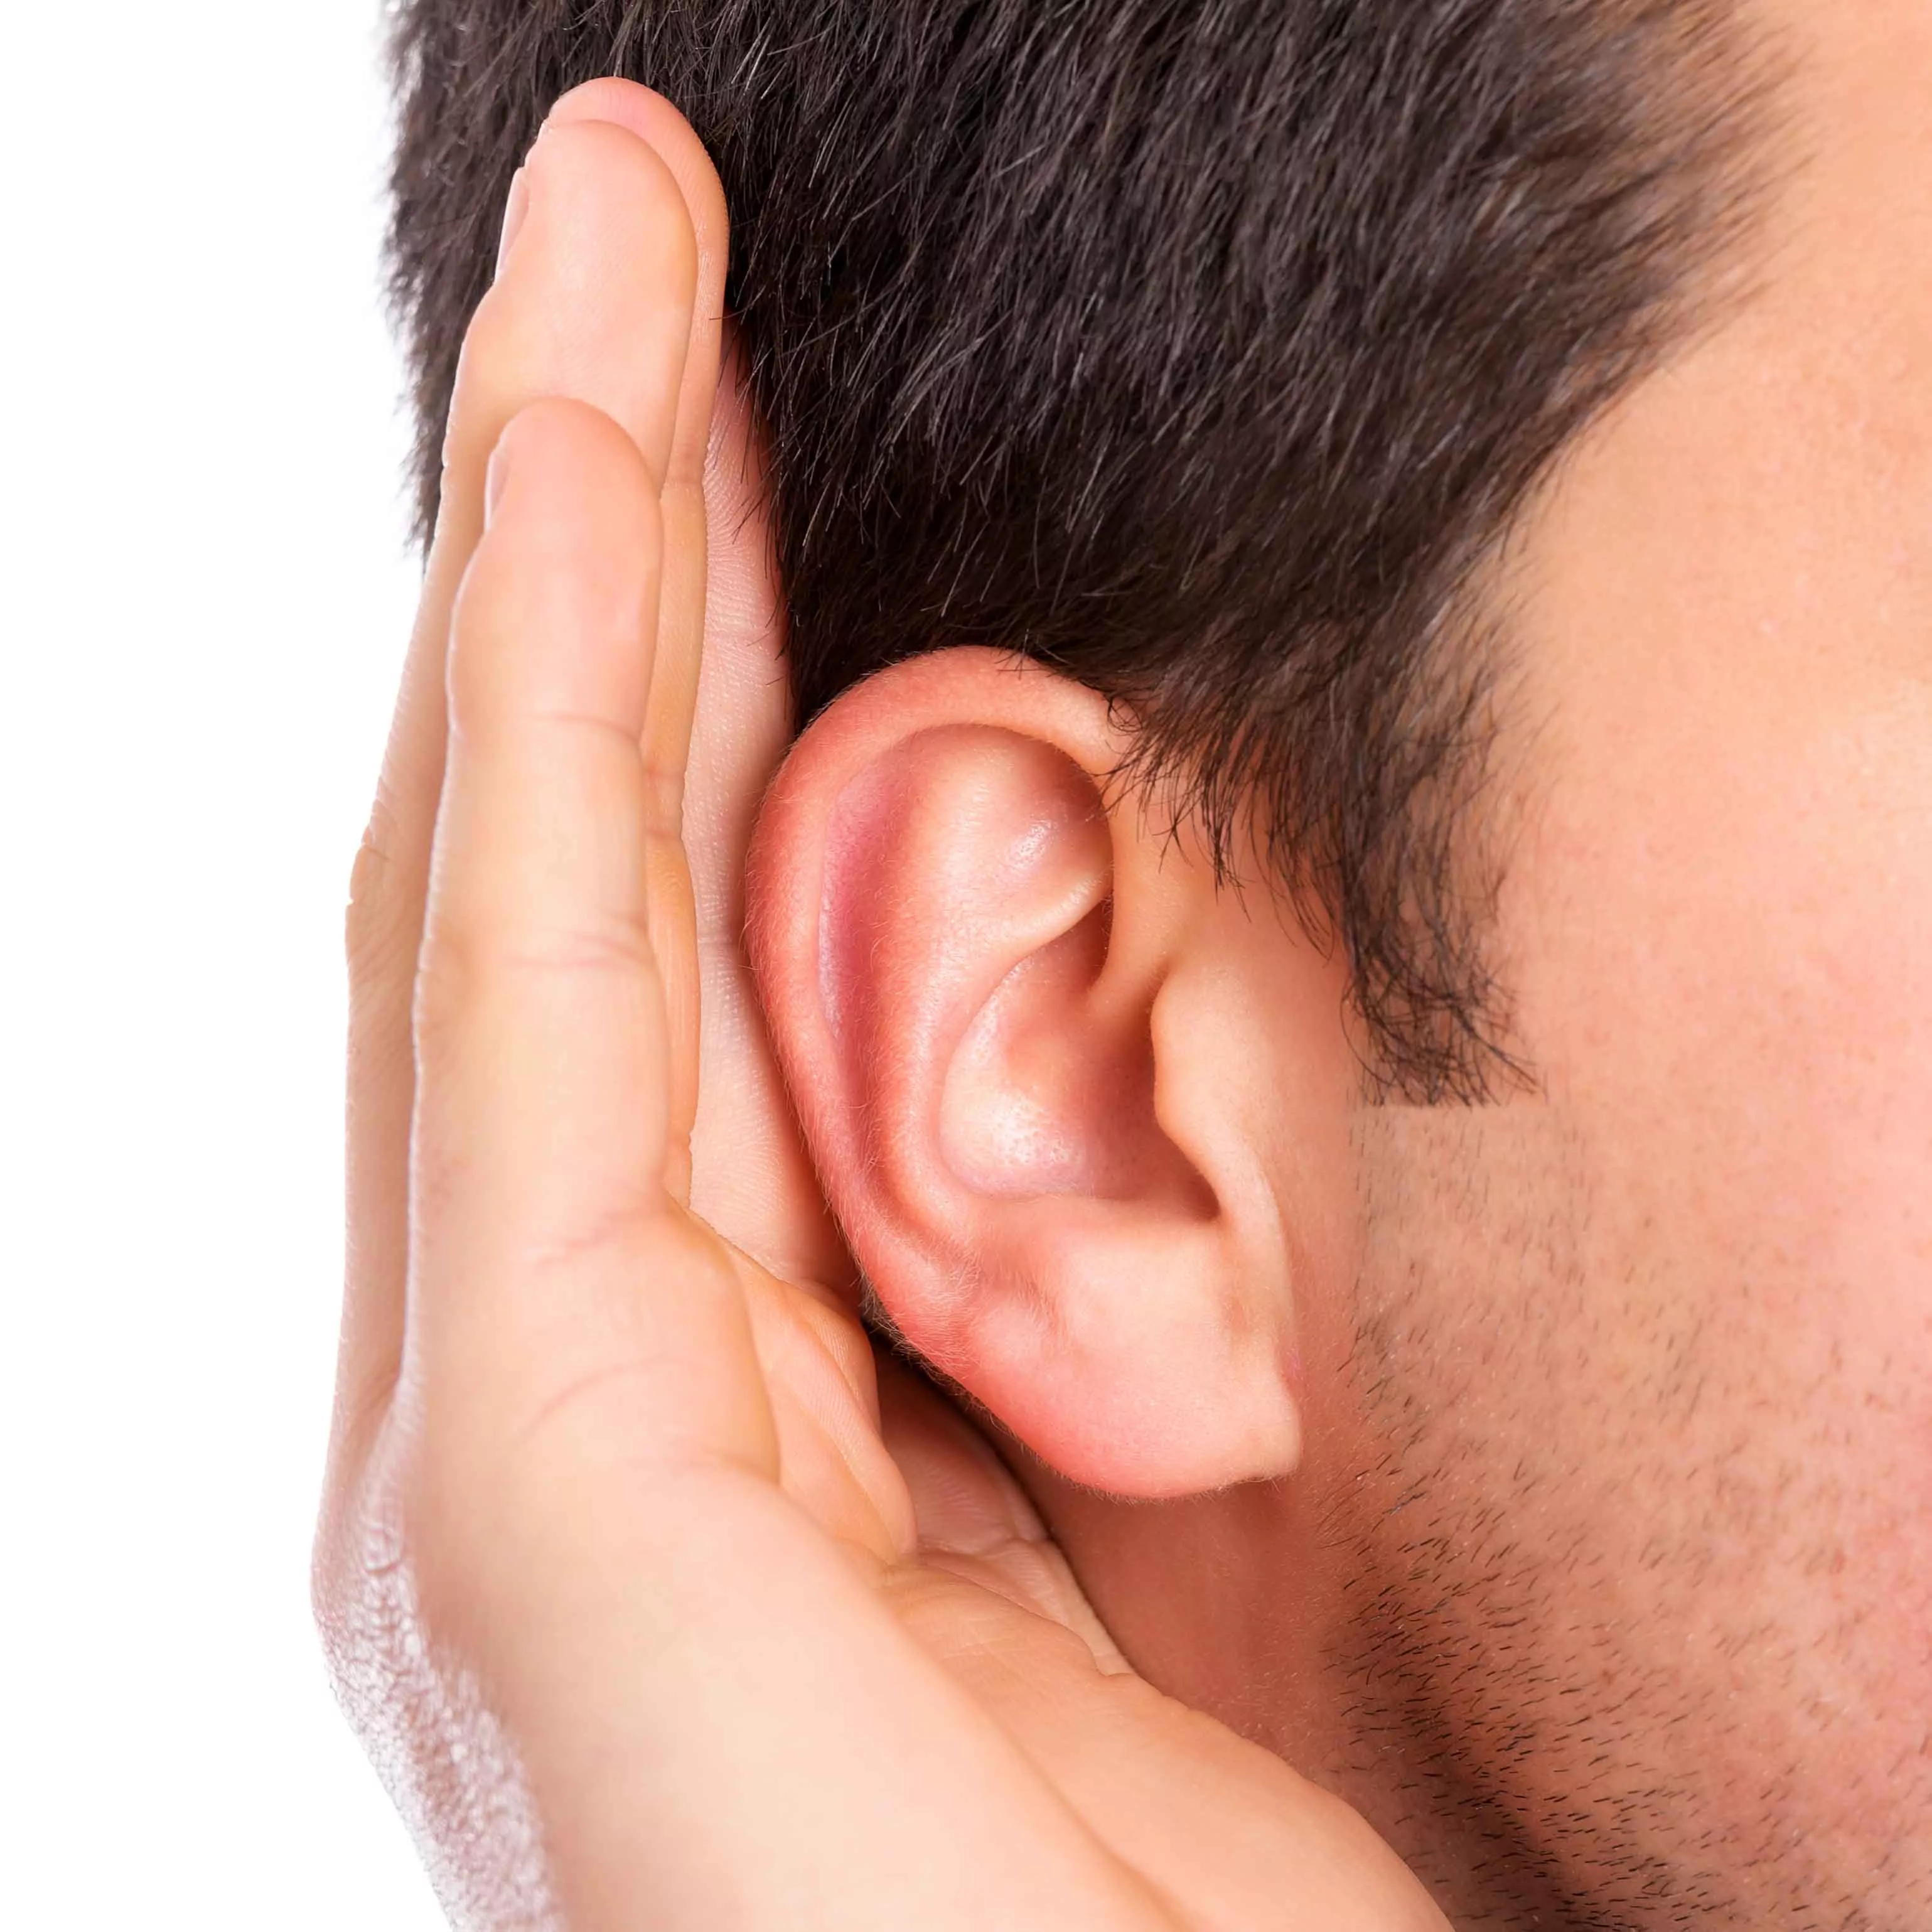 कान में घंटी बजने का क्या मतलब है?